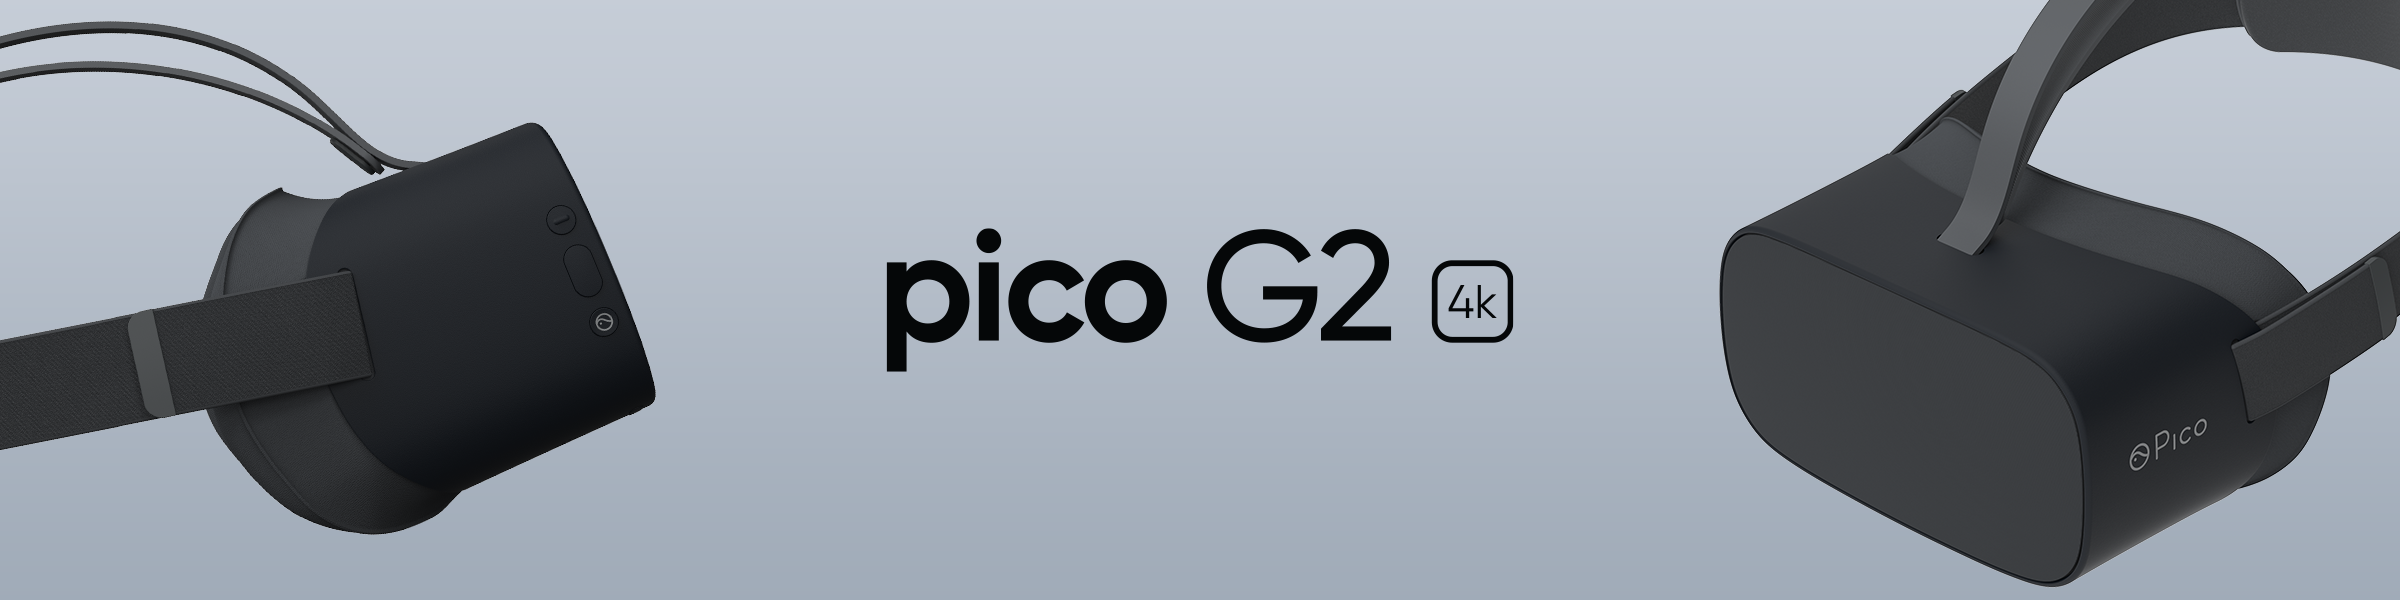 Pico G2 4K banner